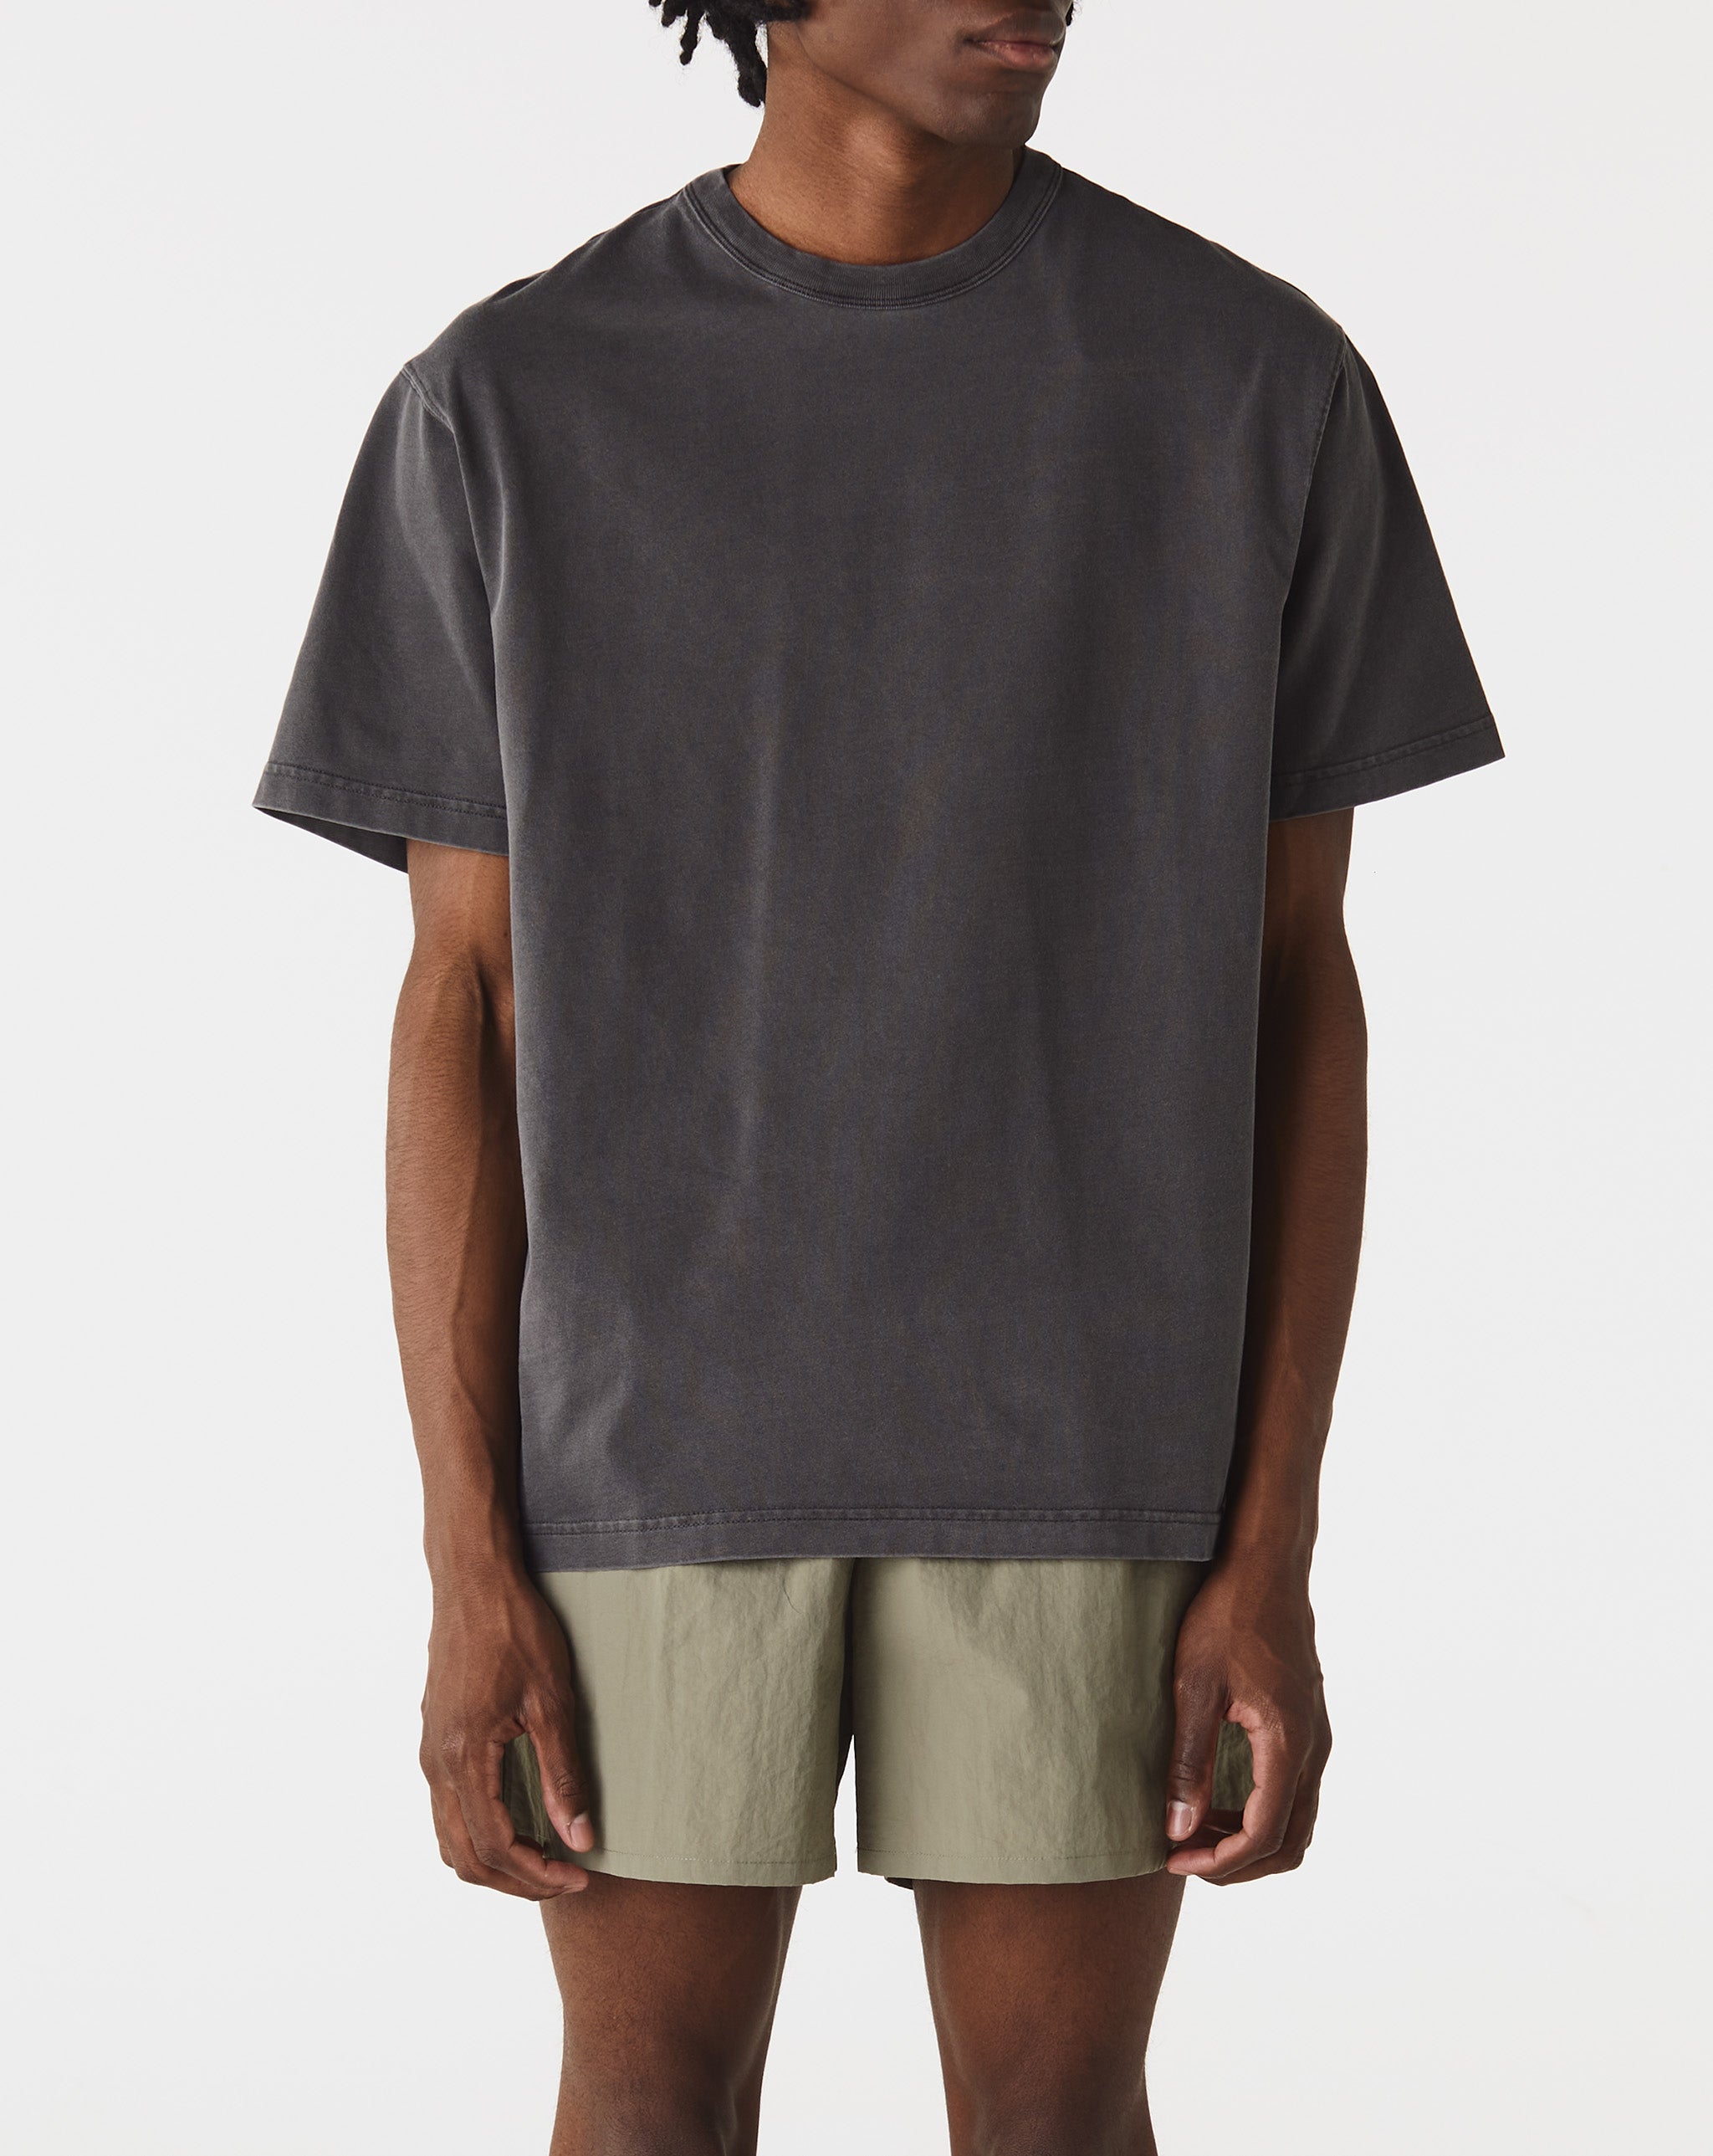 Carhartt WIP Taos T-Shirt  - Cheap Cerbe Jordan outlet